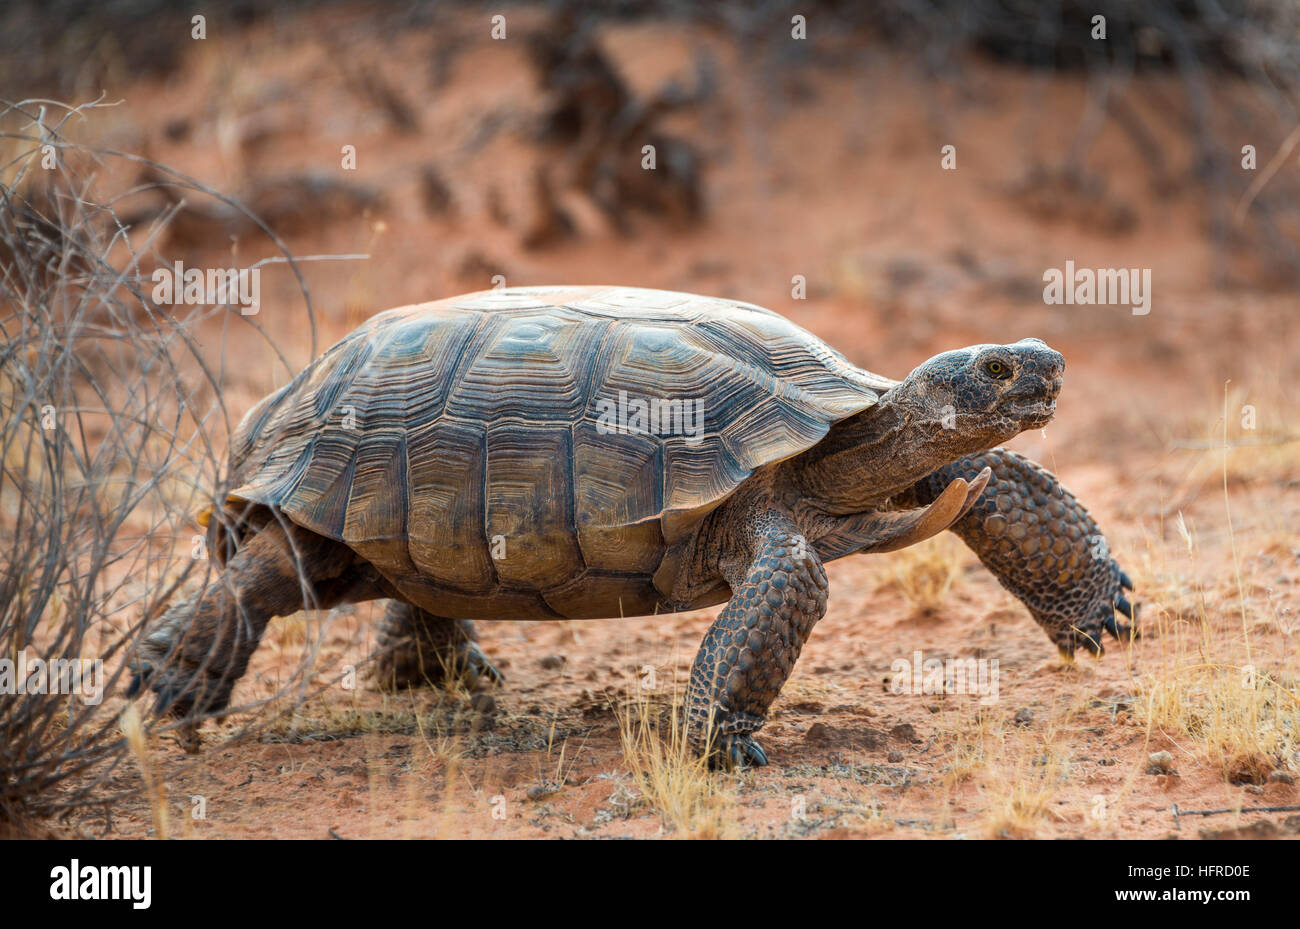 Agassiz's desert tortoise (Gopherus agassizii) walking in dry terrain, Valley of Fire, Mojave Desert, Nevada, USA Stock Photo